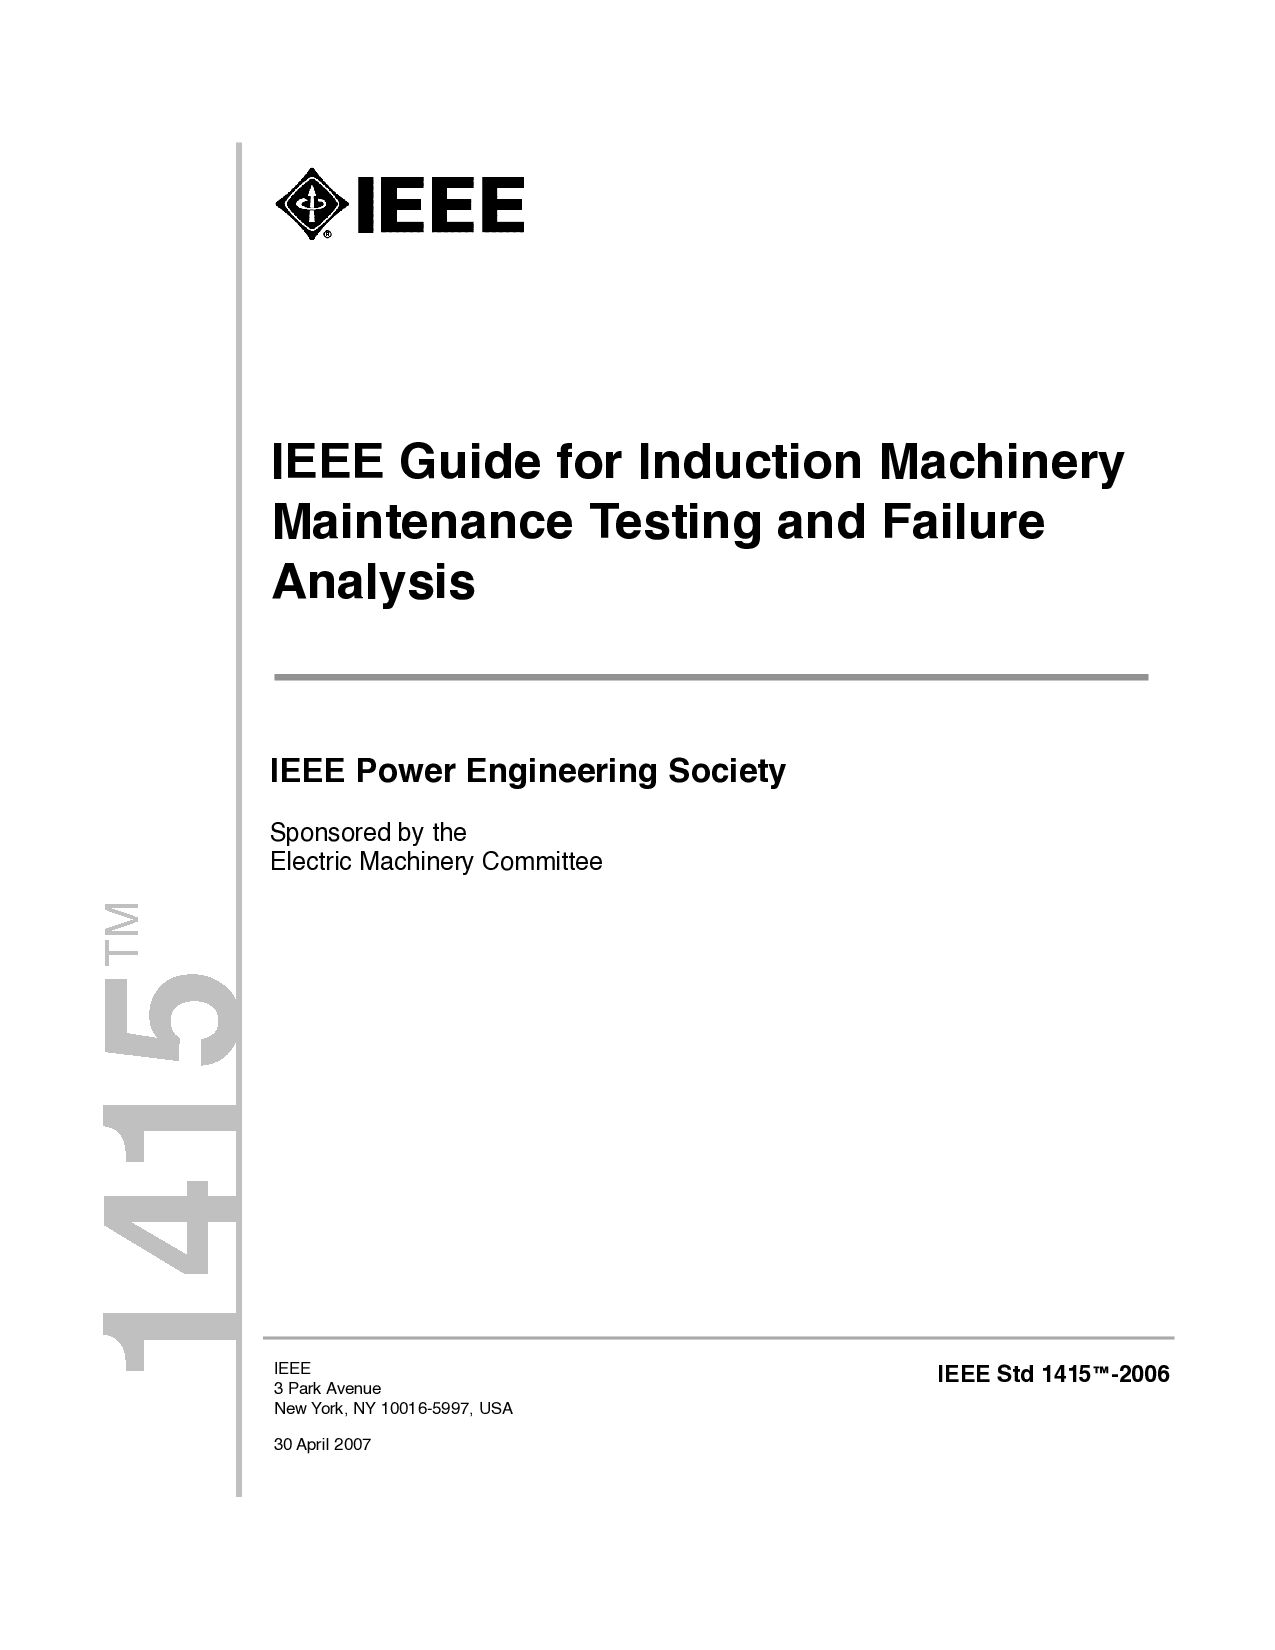 IEEE 1415-2006